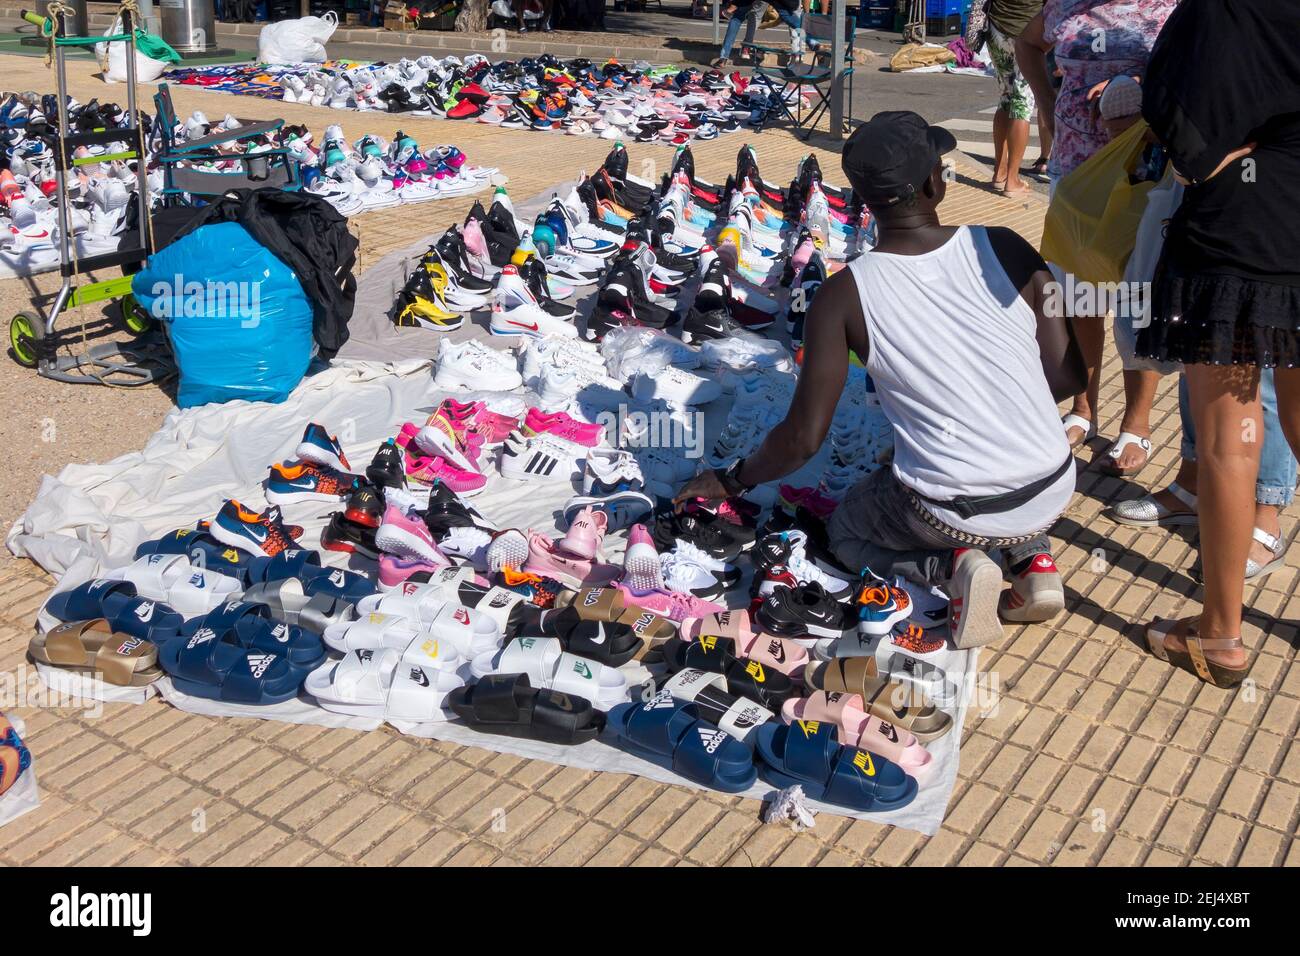 Mercado ilegal de zapatos deportivos falsos, falsificación en la calle llamada manta superior Foto de stock